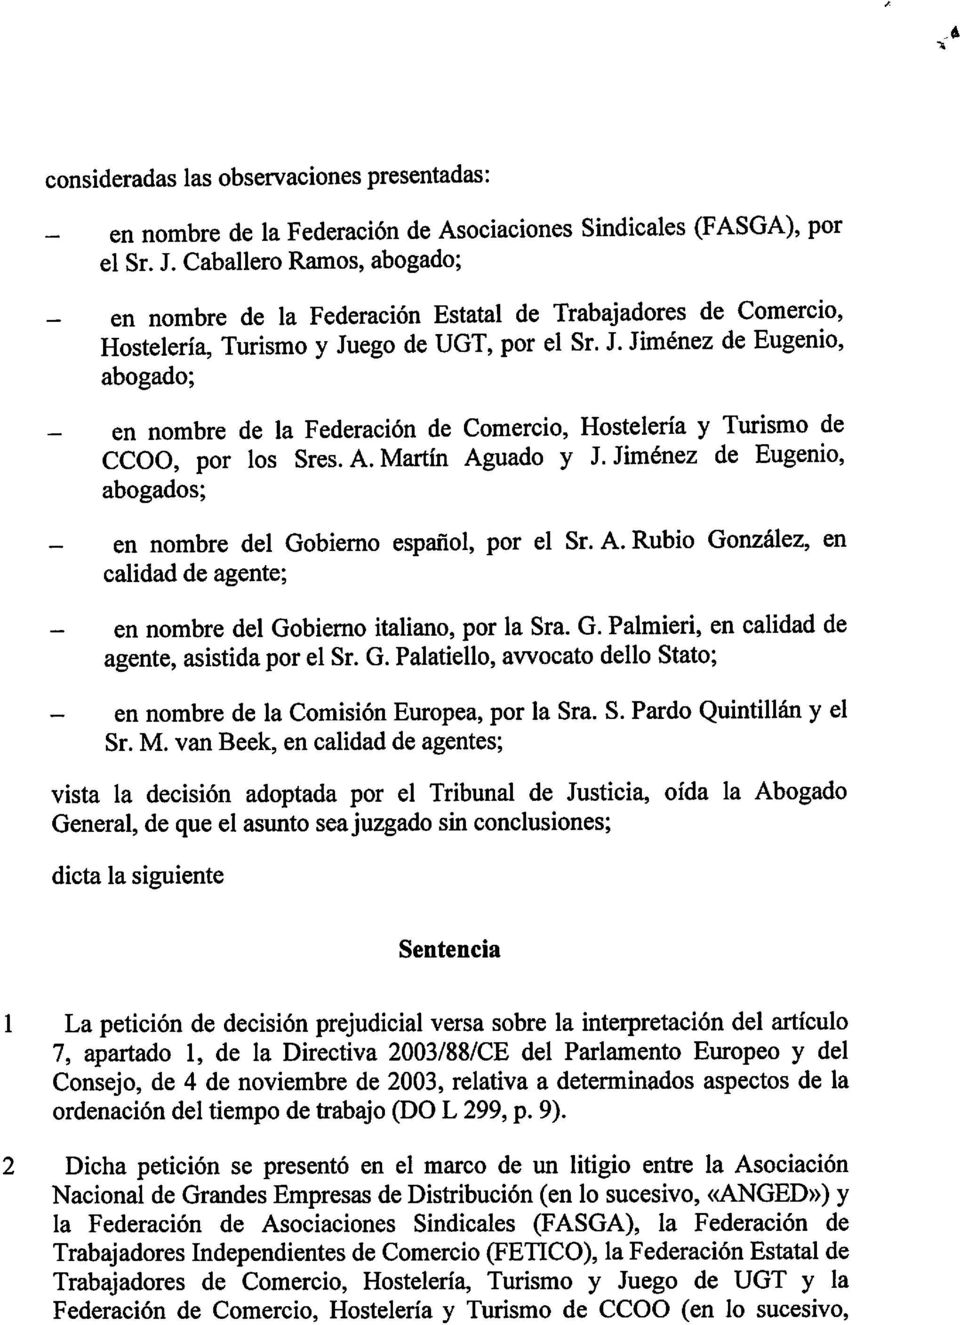 ego de UGT, por el Sr. J. Jiménez de Eugenio, abogado; en nombre de la Federación de Comercio, Hostelería y Turismo de CCOO, por los Sres.A.Martín Aguado y J.